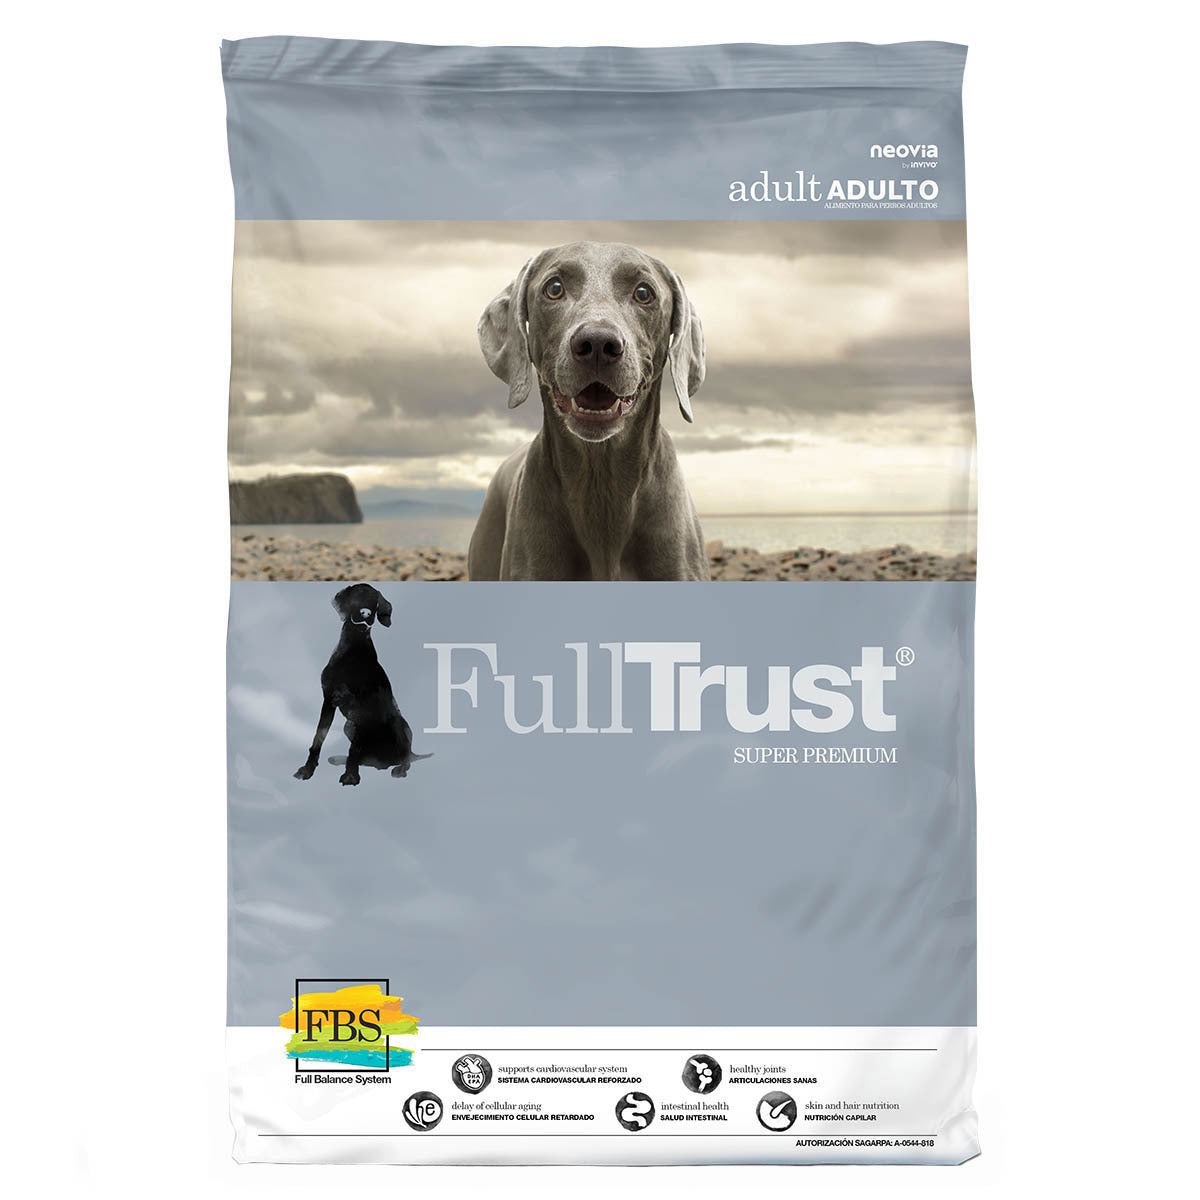 Full Trust Adulto Razas Medianas y Grandes - Alimento para Perro Super Premium, perro, FullTrust, Mister Mascotas